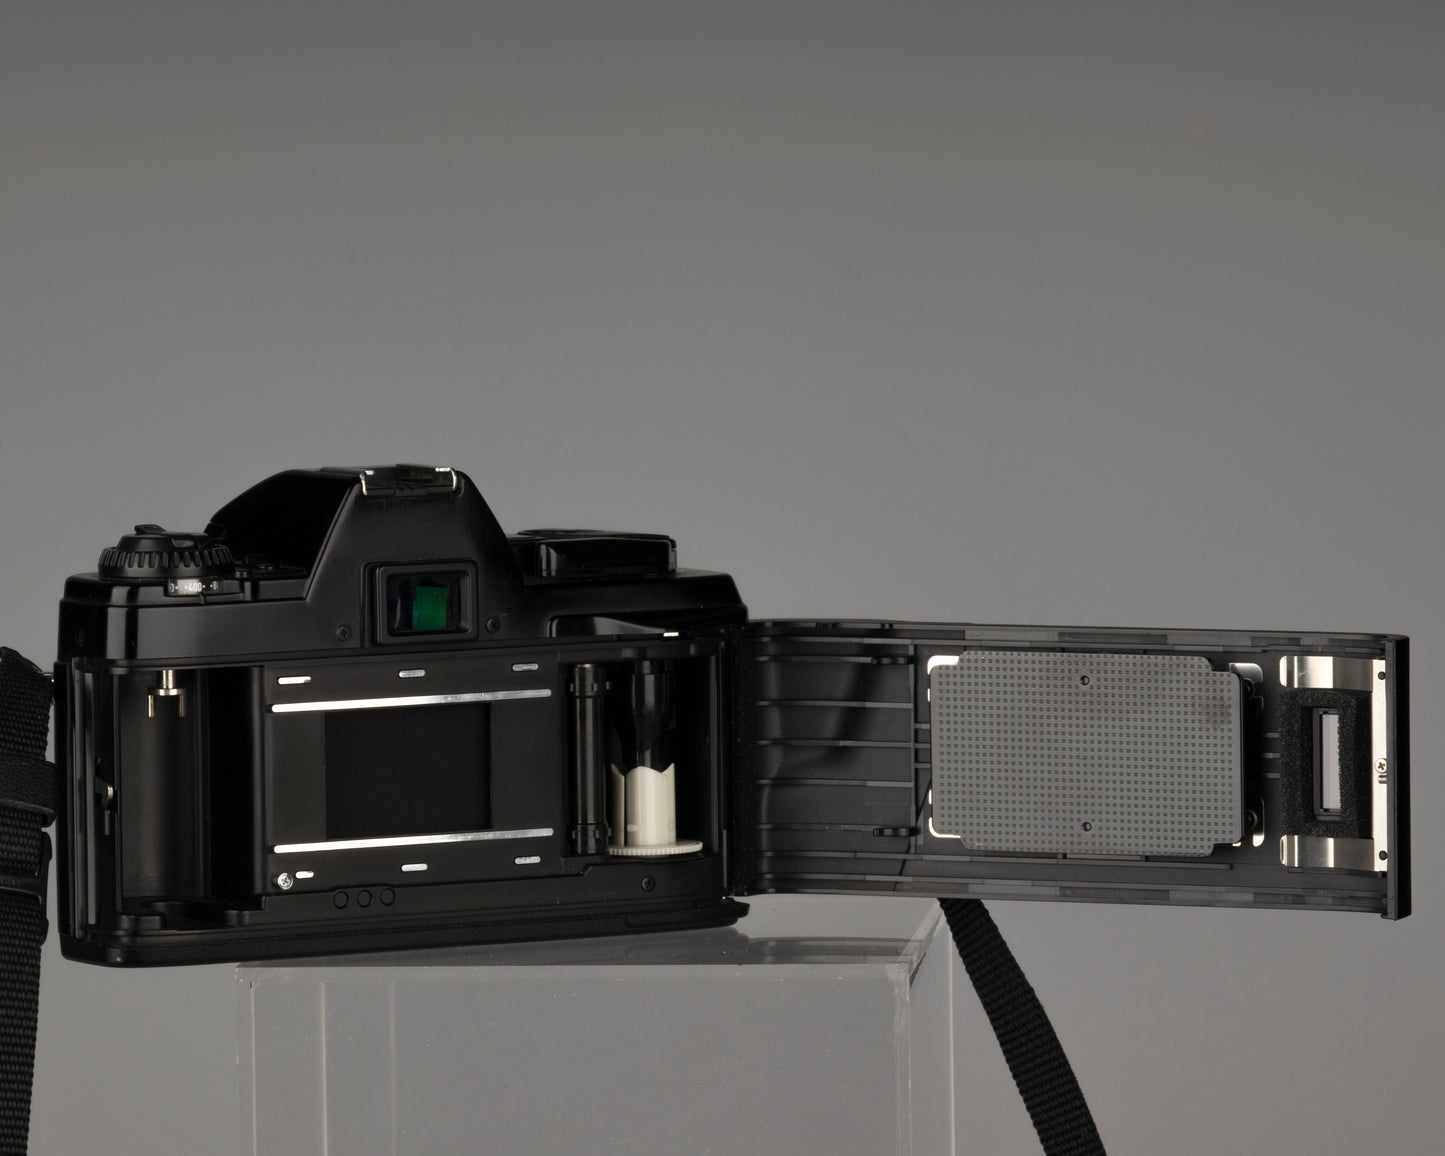 Minolta X-9 35 mm SLR avec objectif Minolta MD 50 mm f1.7 + étui toujours prêt